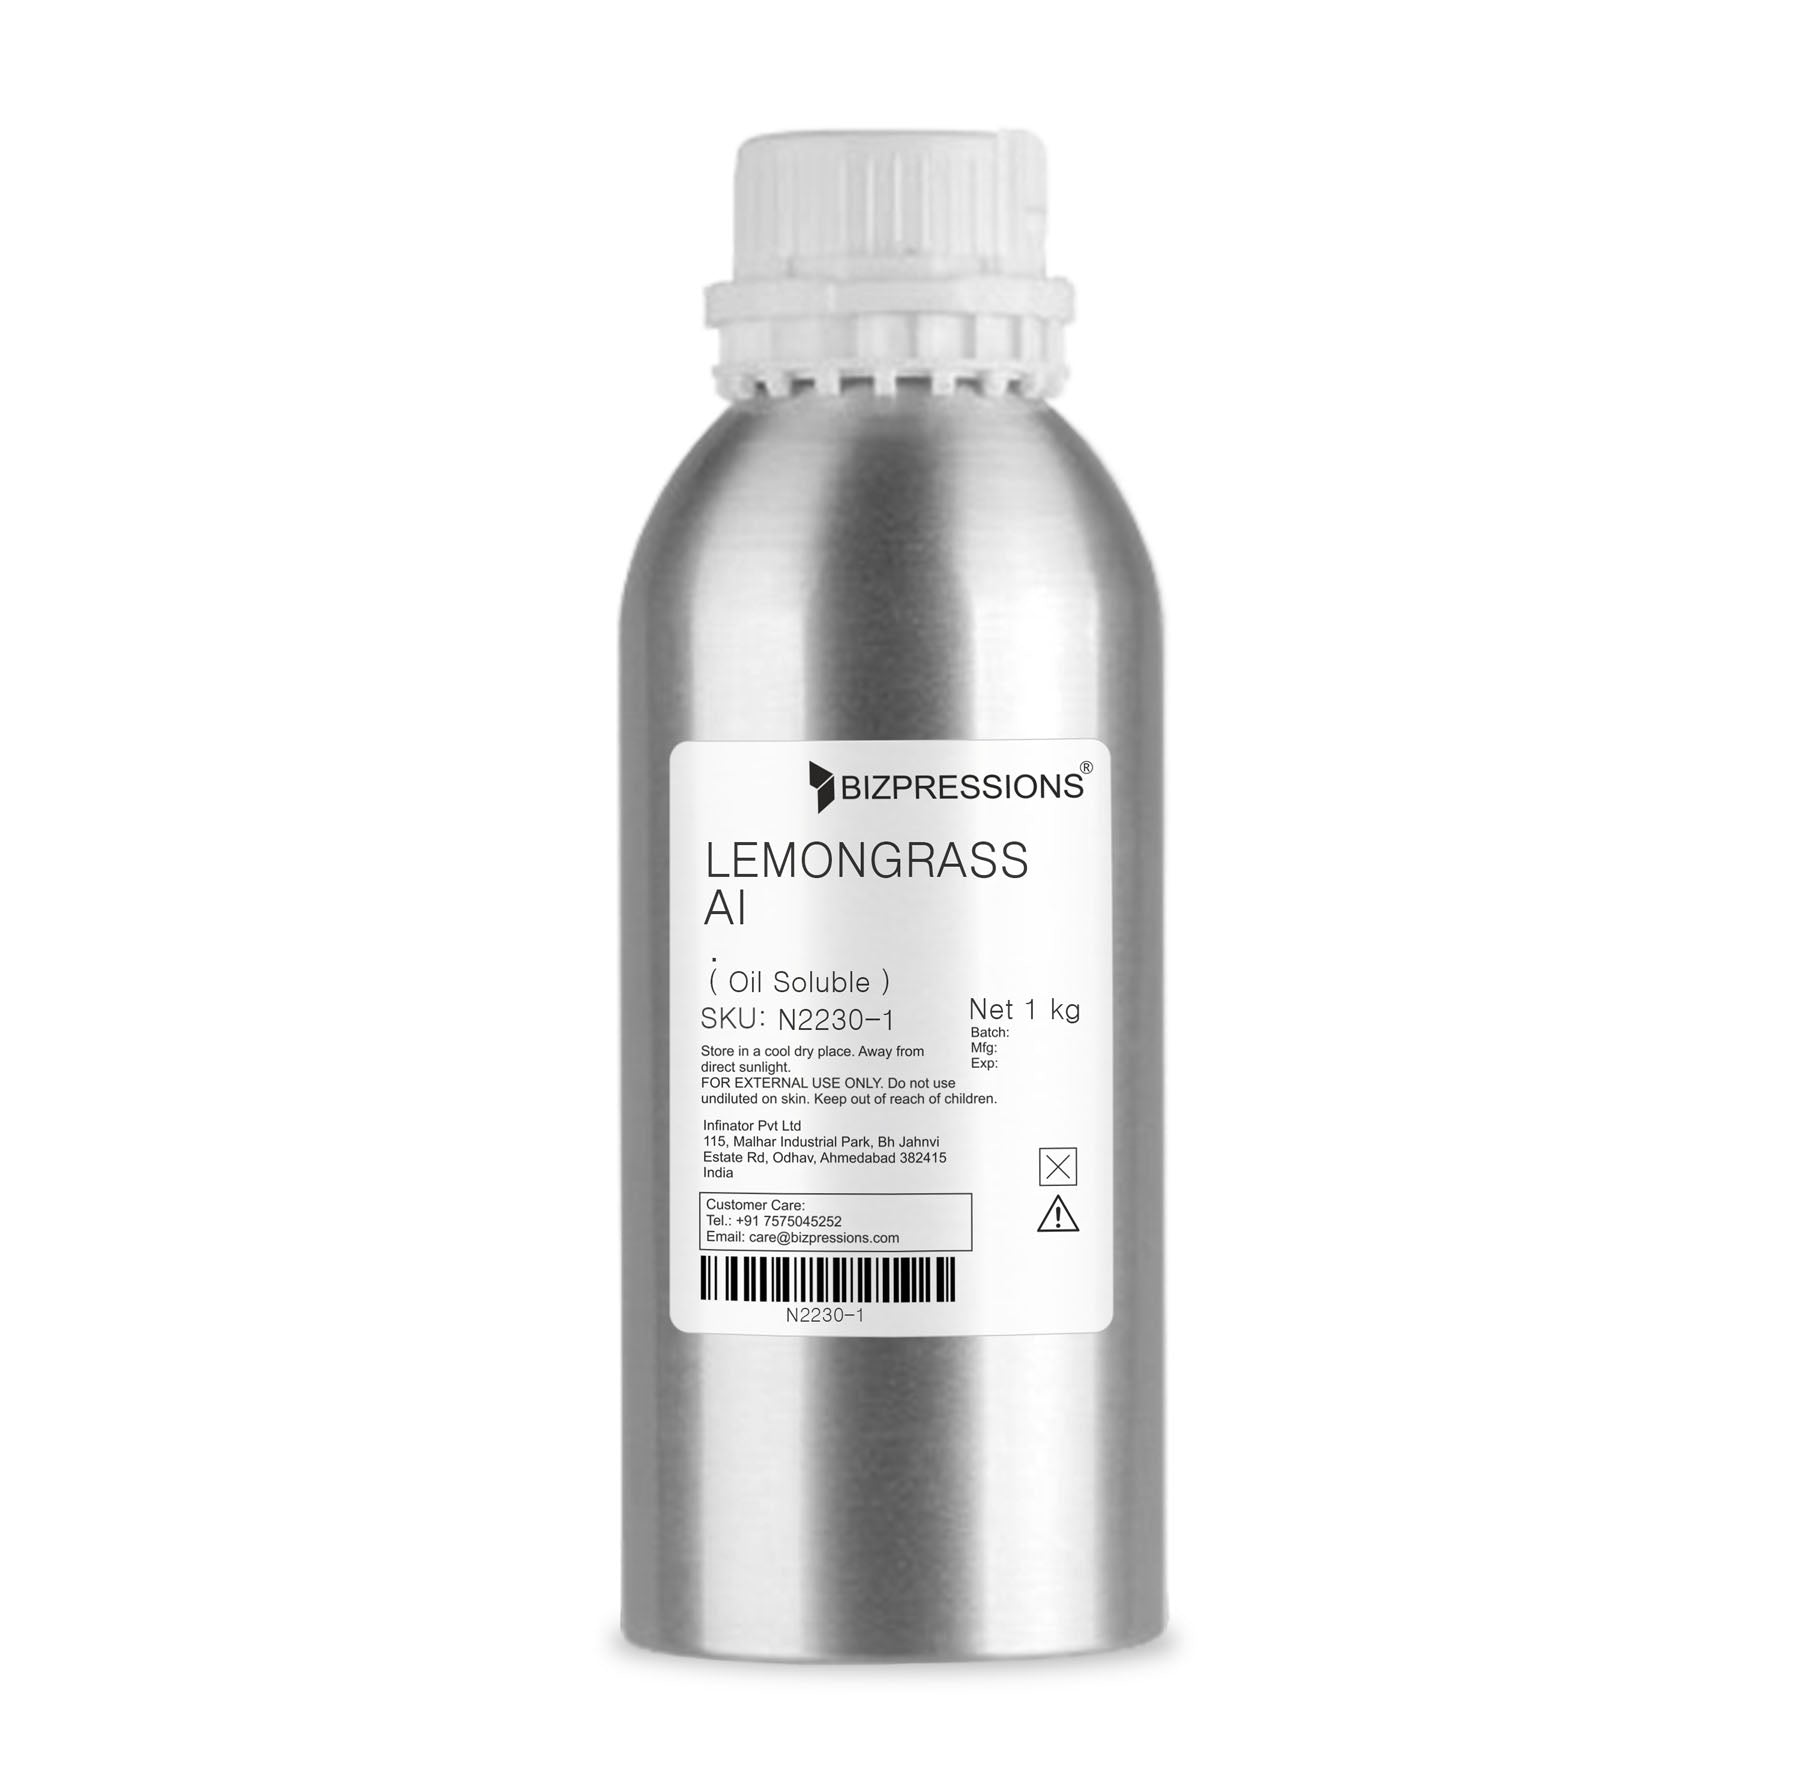 LEMONGRASS AI - Fragrance ( Oil Soluble ) - 1 kg